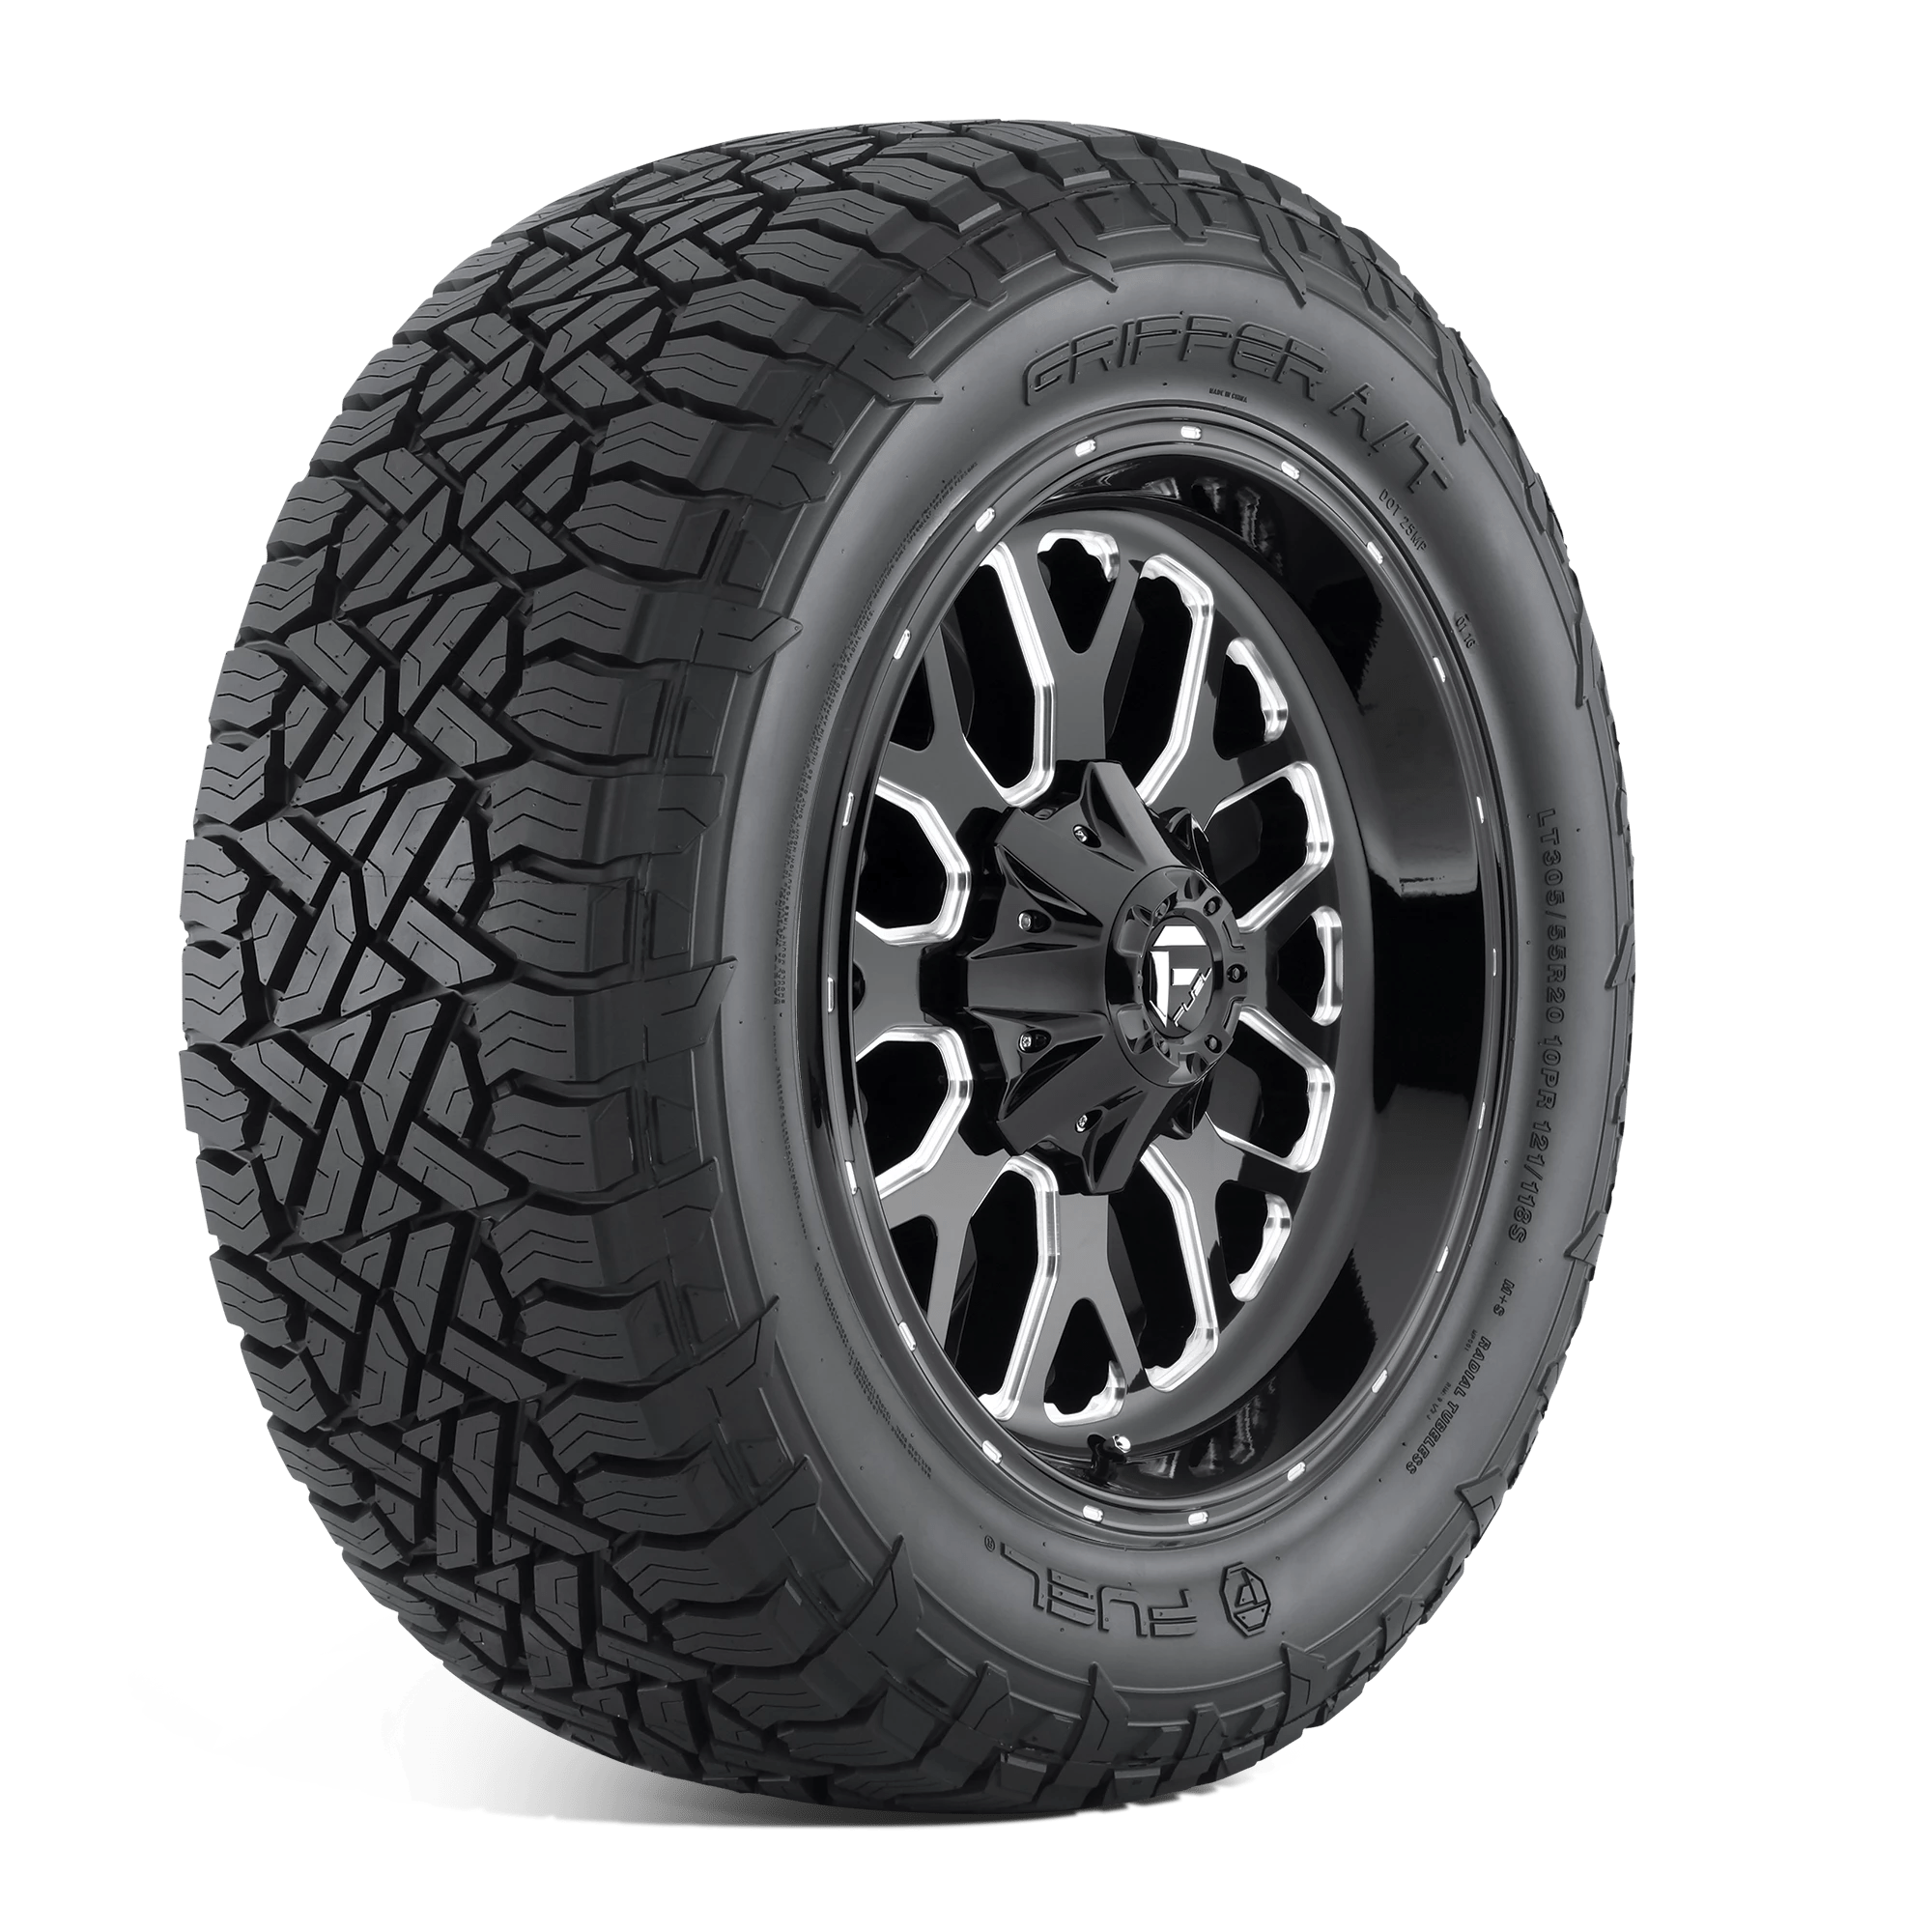 FUEL GRIPPER AT 275/65R18 (32.1X11R 18) Tires